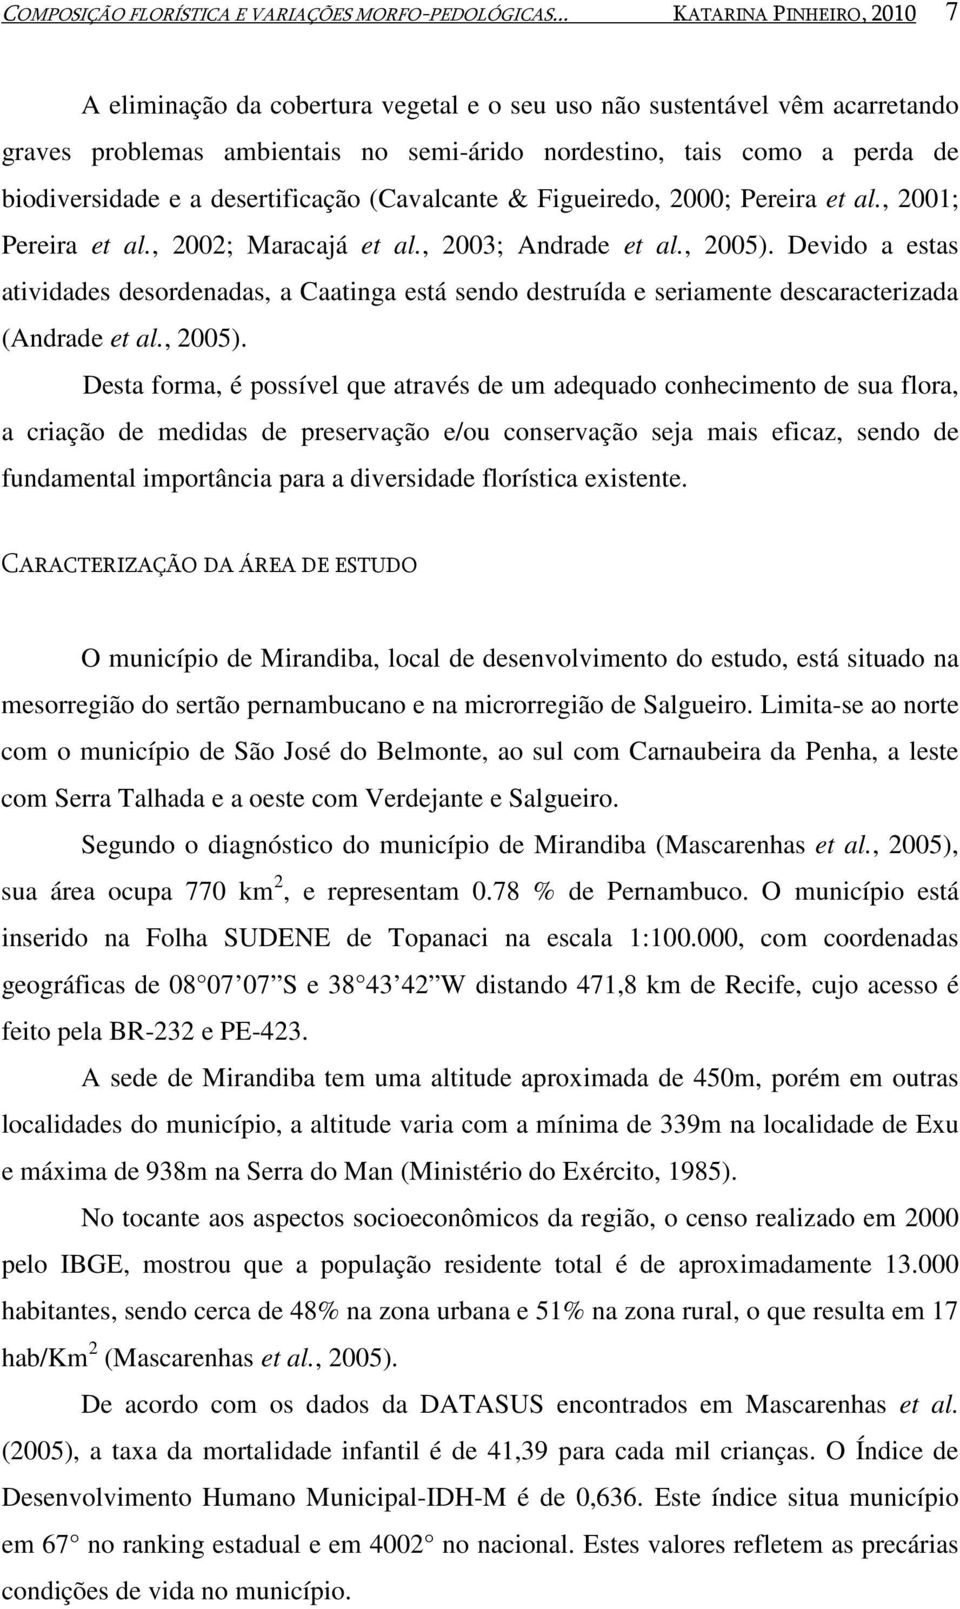 a desertificação (Cavalcante & Figueiredo, 2000; Pereira et al., 2001; Pereira et al., 2002; Maracajá et al., 2003; Andrade et al., 2005).